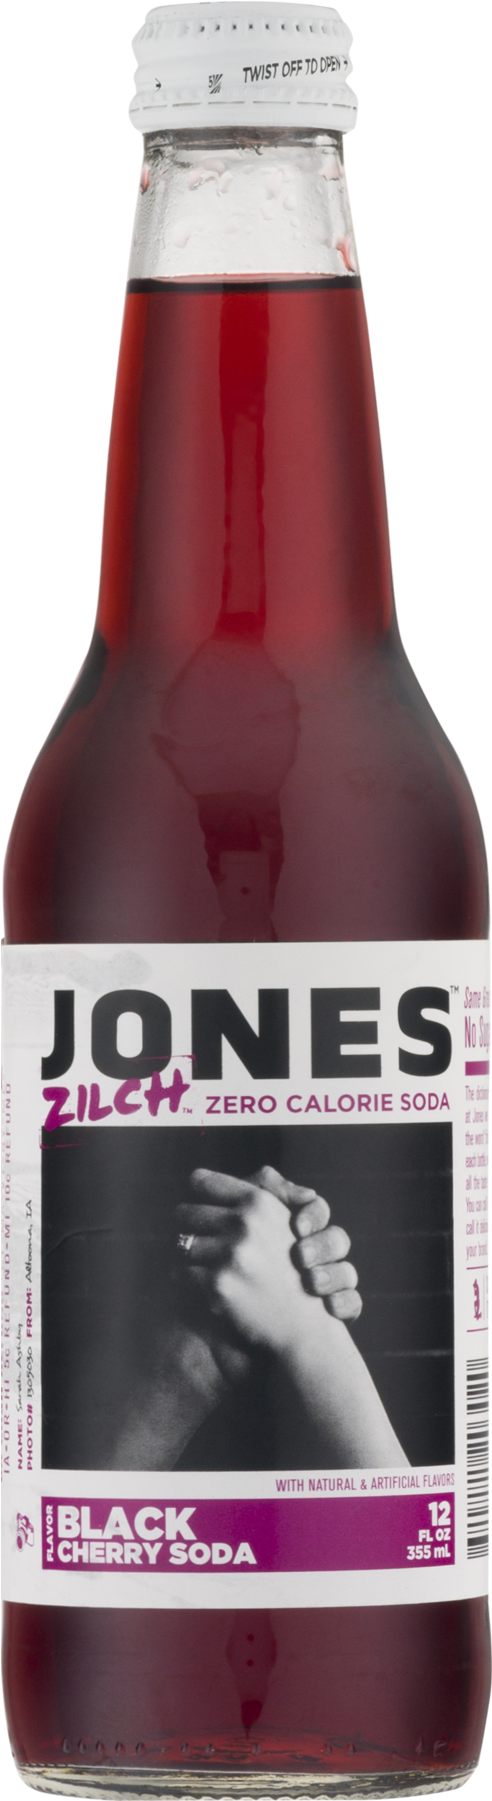 Jones Zilch Zero Calorie Black Cherry Flavor Soda, - Beer Bottle Clipart (1800x1800), Png Download